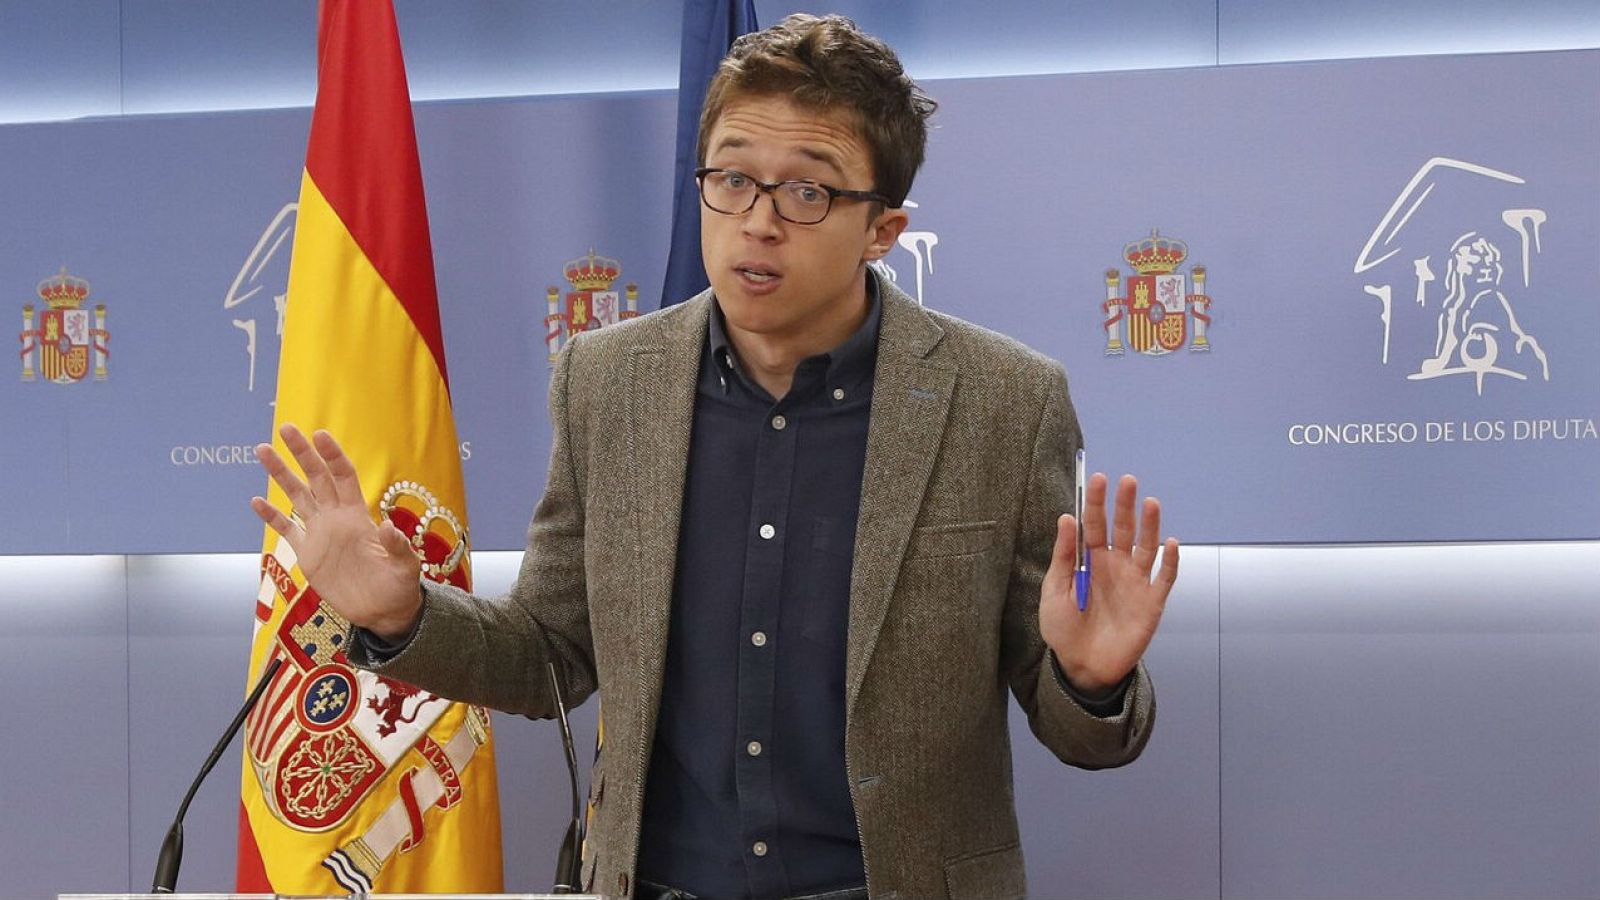 Errejón, sobre su apoyo a los PGE: "Es de sentido común, necesitamos unos presupuestos para reconstruir el país" - RTVE.es